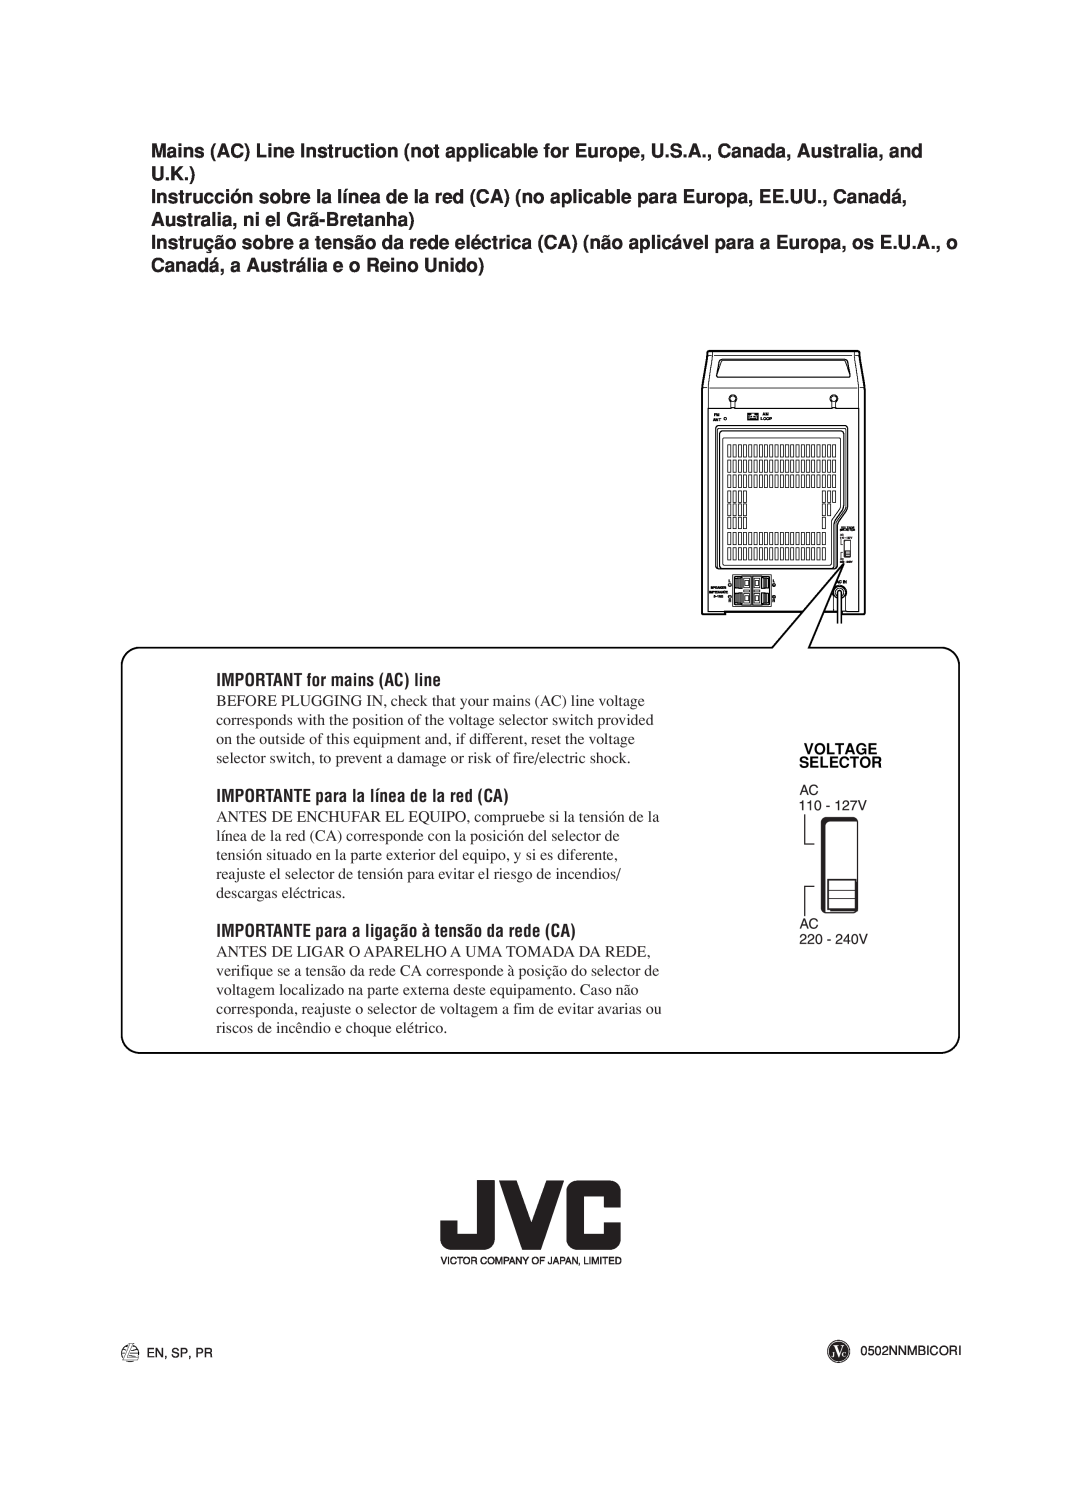 JVC UX-M5 manual IMPORTANT for mains AC line, IMPORTANTE para la línea de la red CA, Voltage Selector 